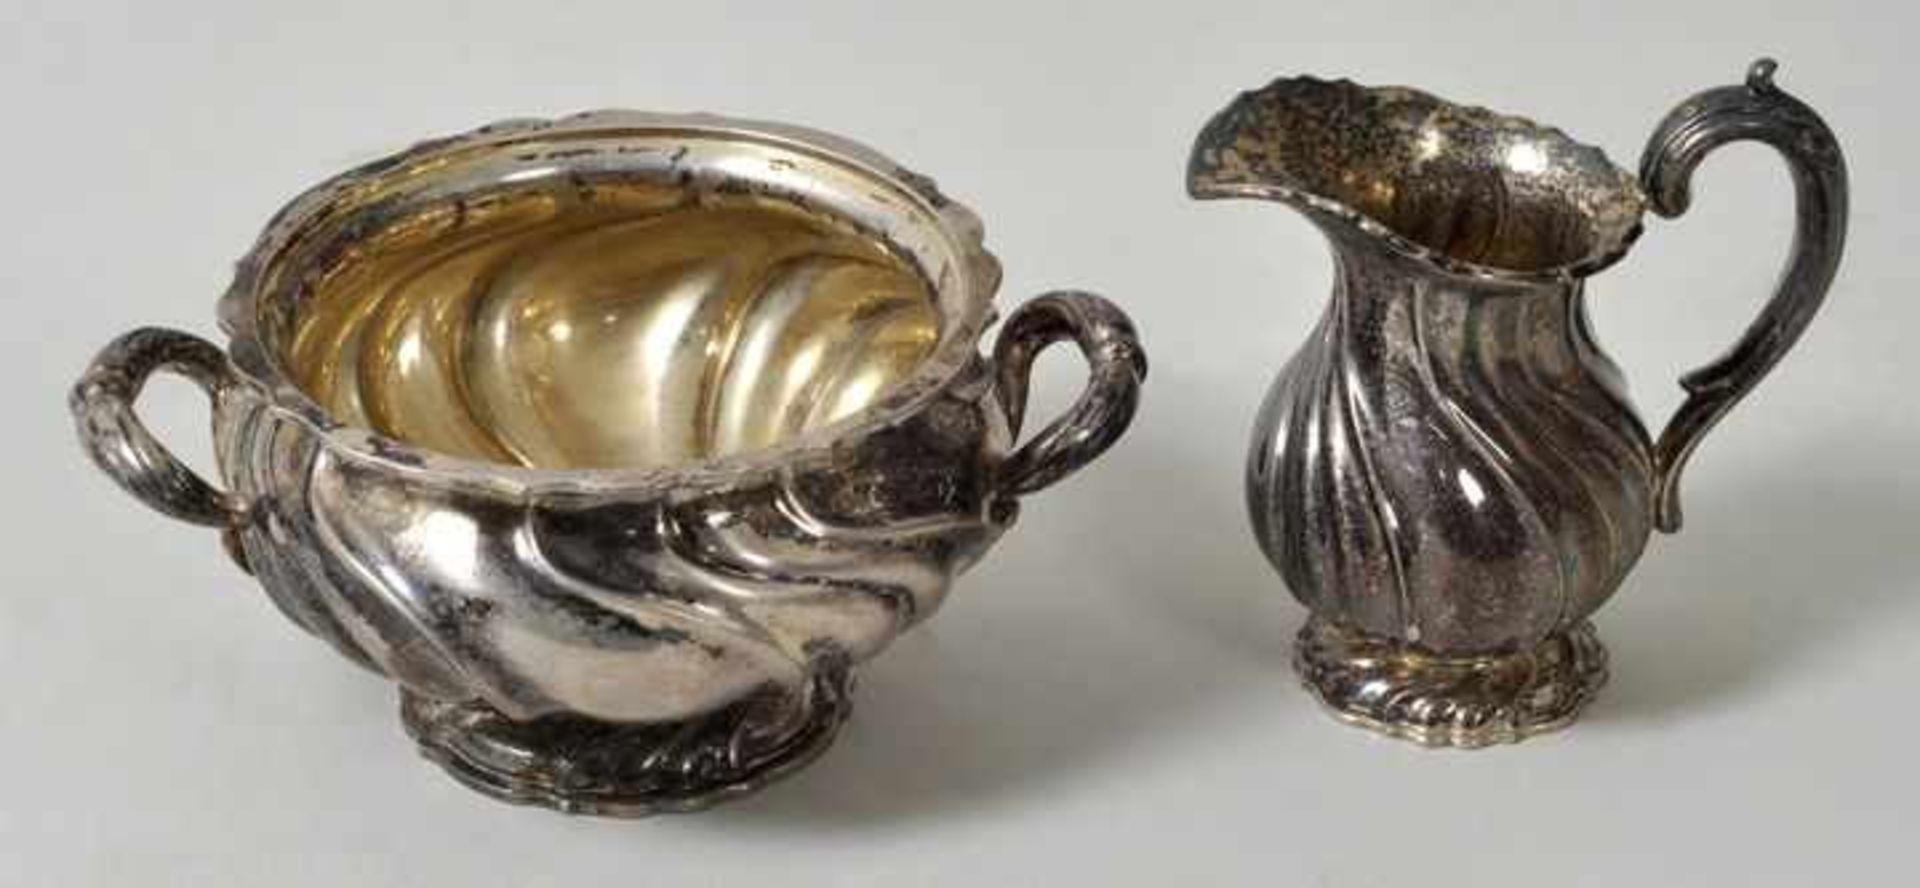 Sahnekännchen und Zuckerdose, Dtl., um 1900 Silber 800, innen Reste v. Vergoldung. Bauchige Form mit